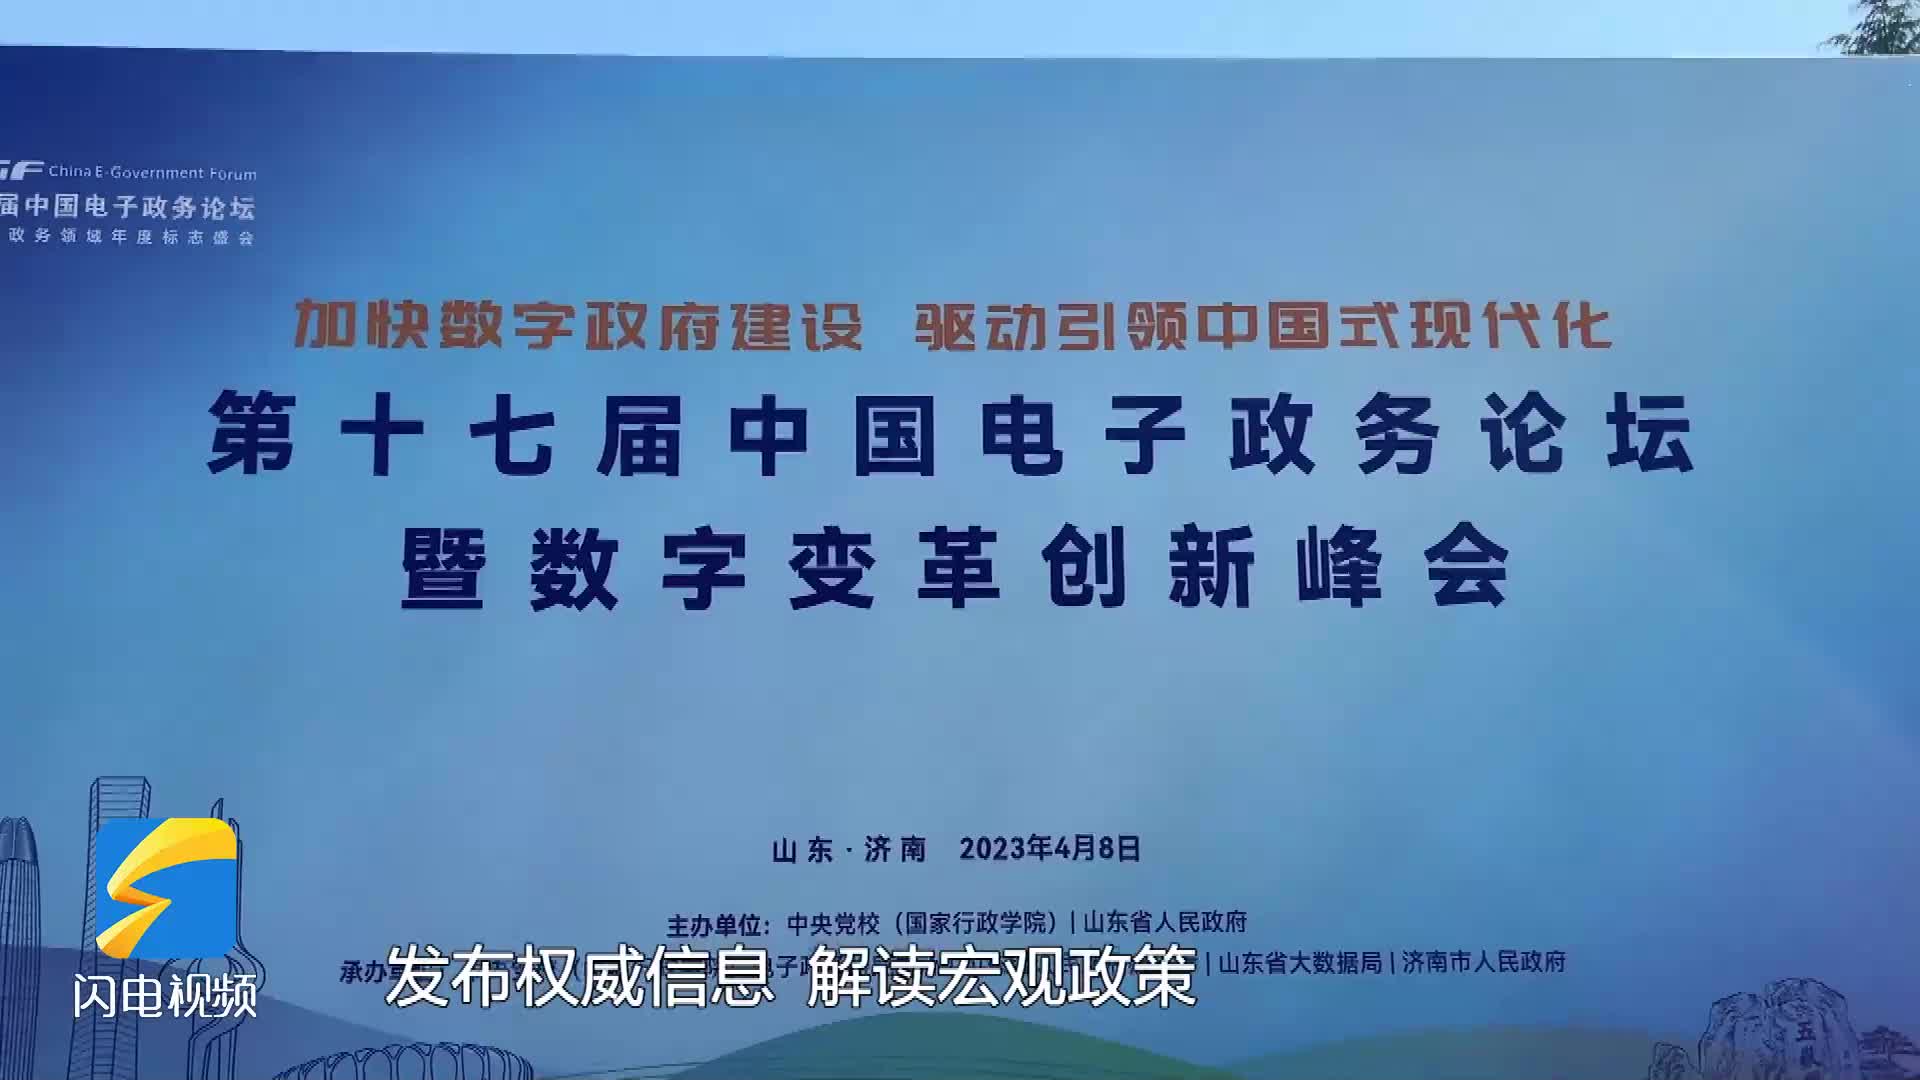 第十七届中国电子政务论坛在济南开幕 闪电新闻记者带你走进论坛现场